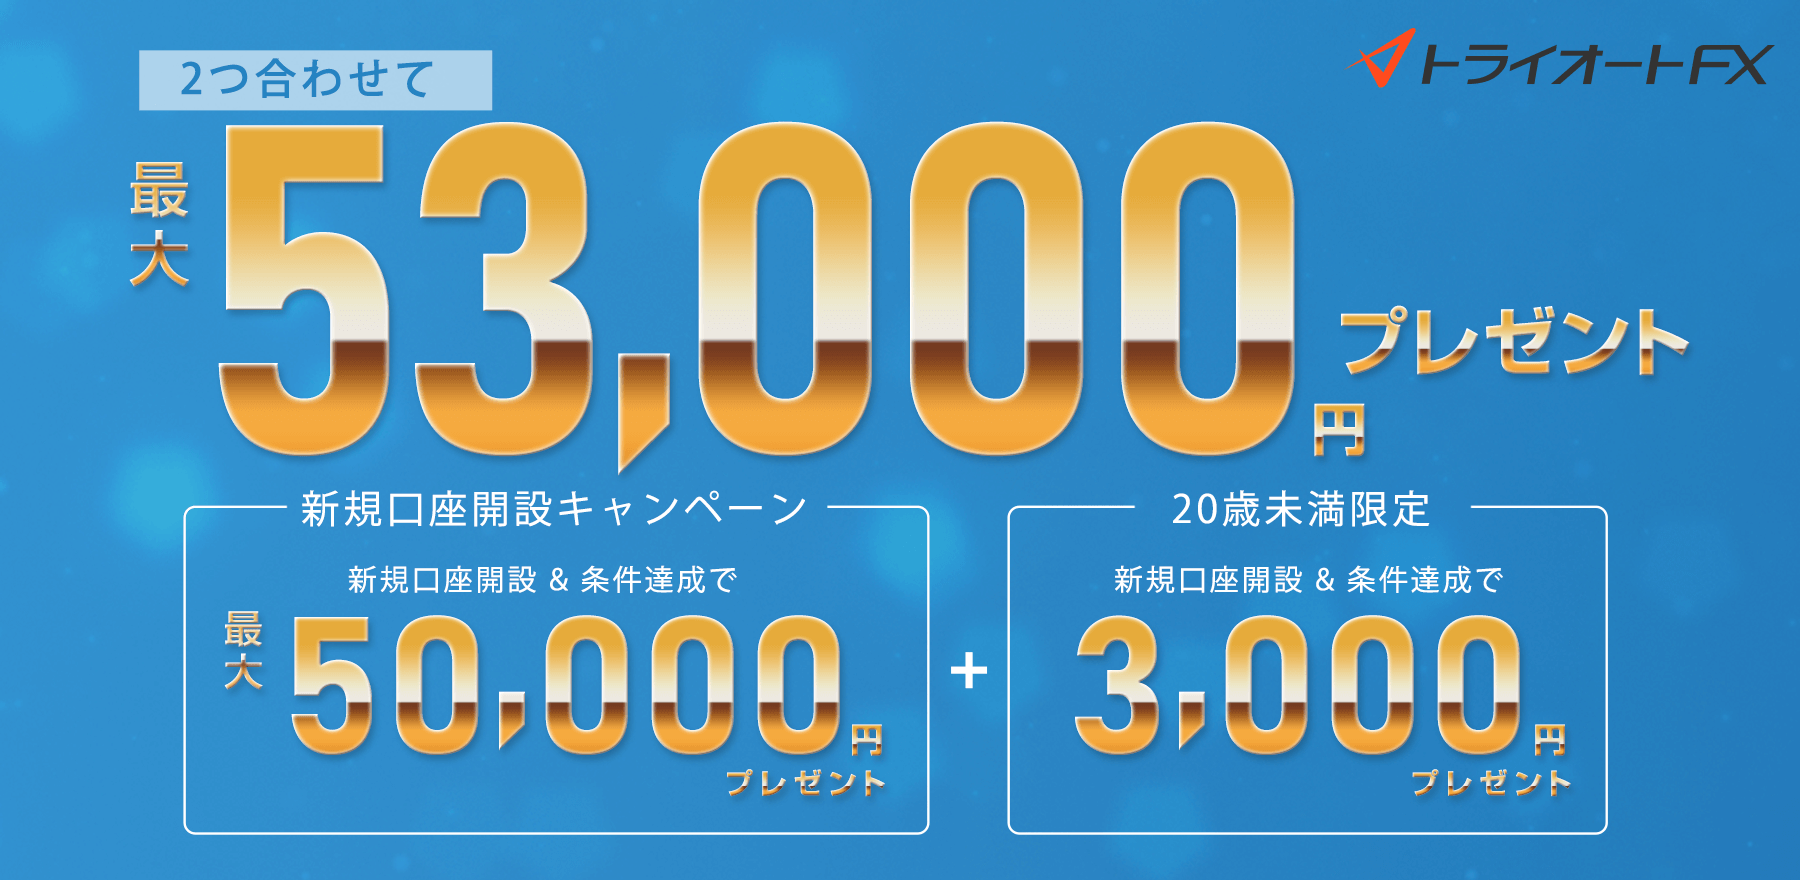 トライオートFX新規口座開設キャンペーン 最大53,000円プレゼント！